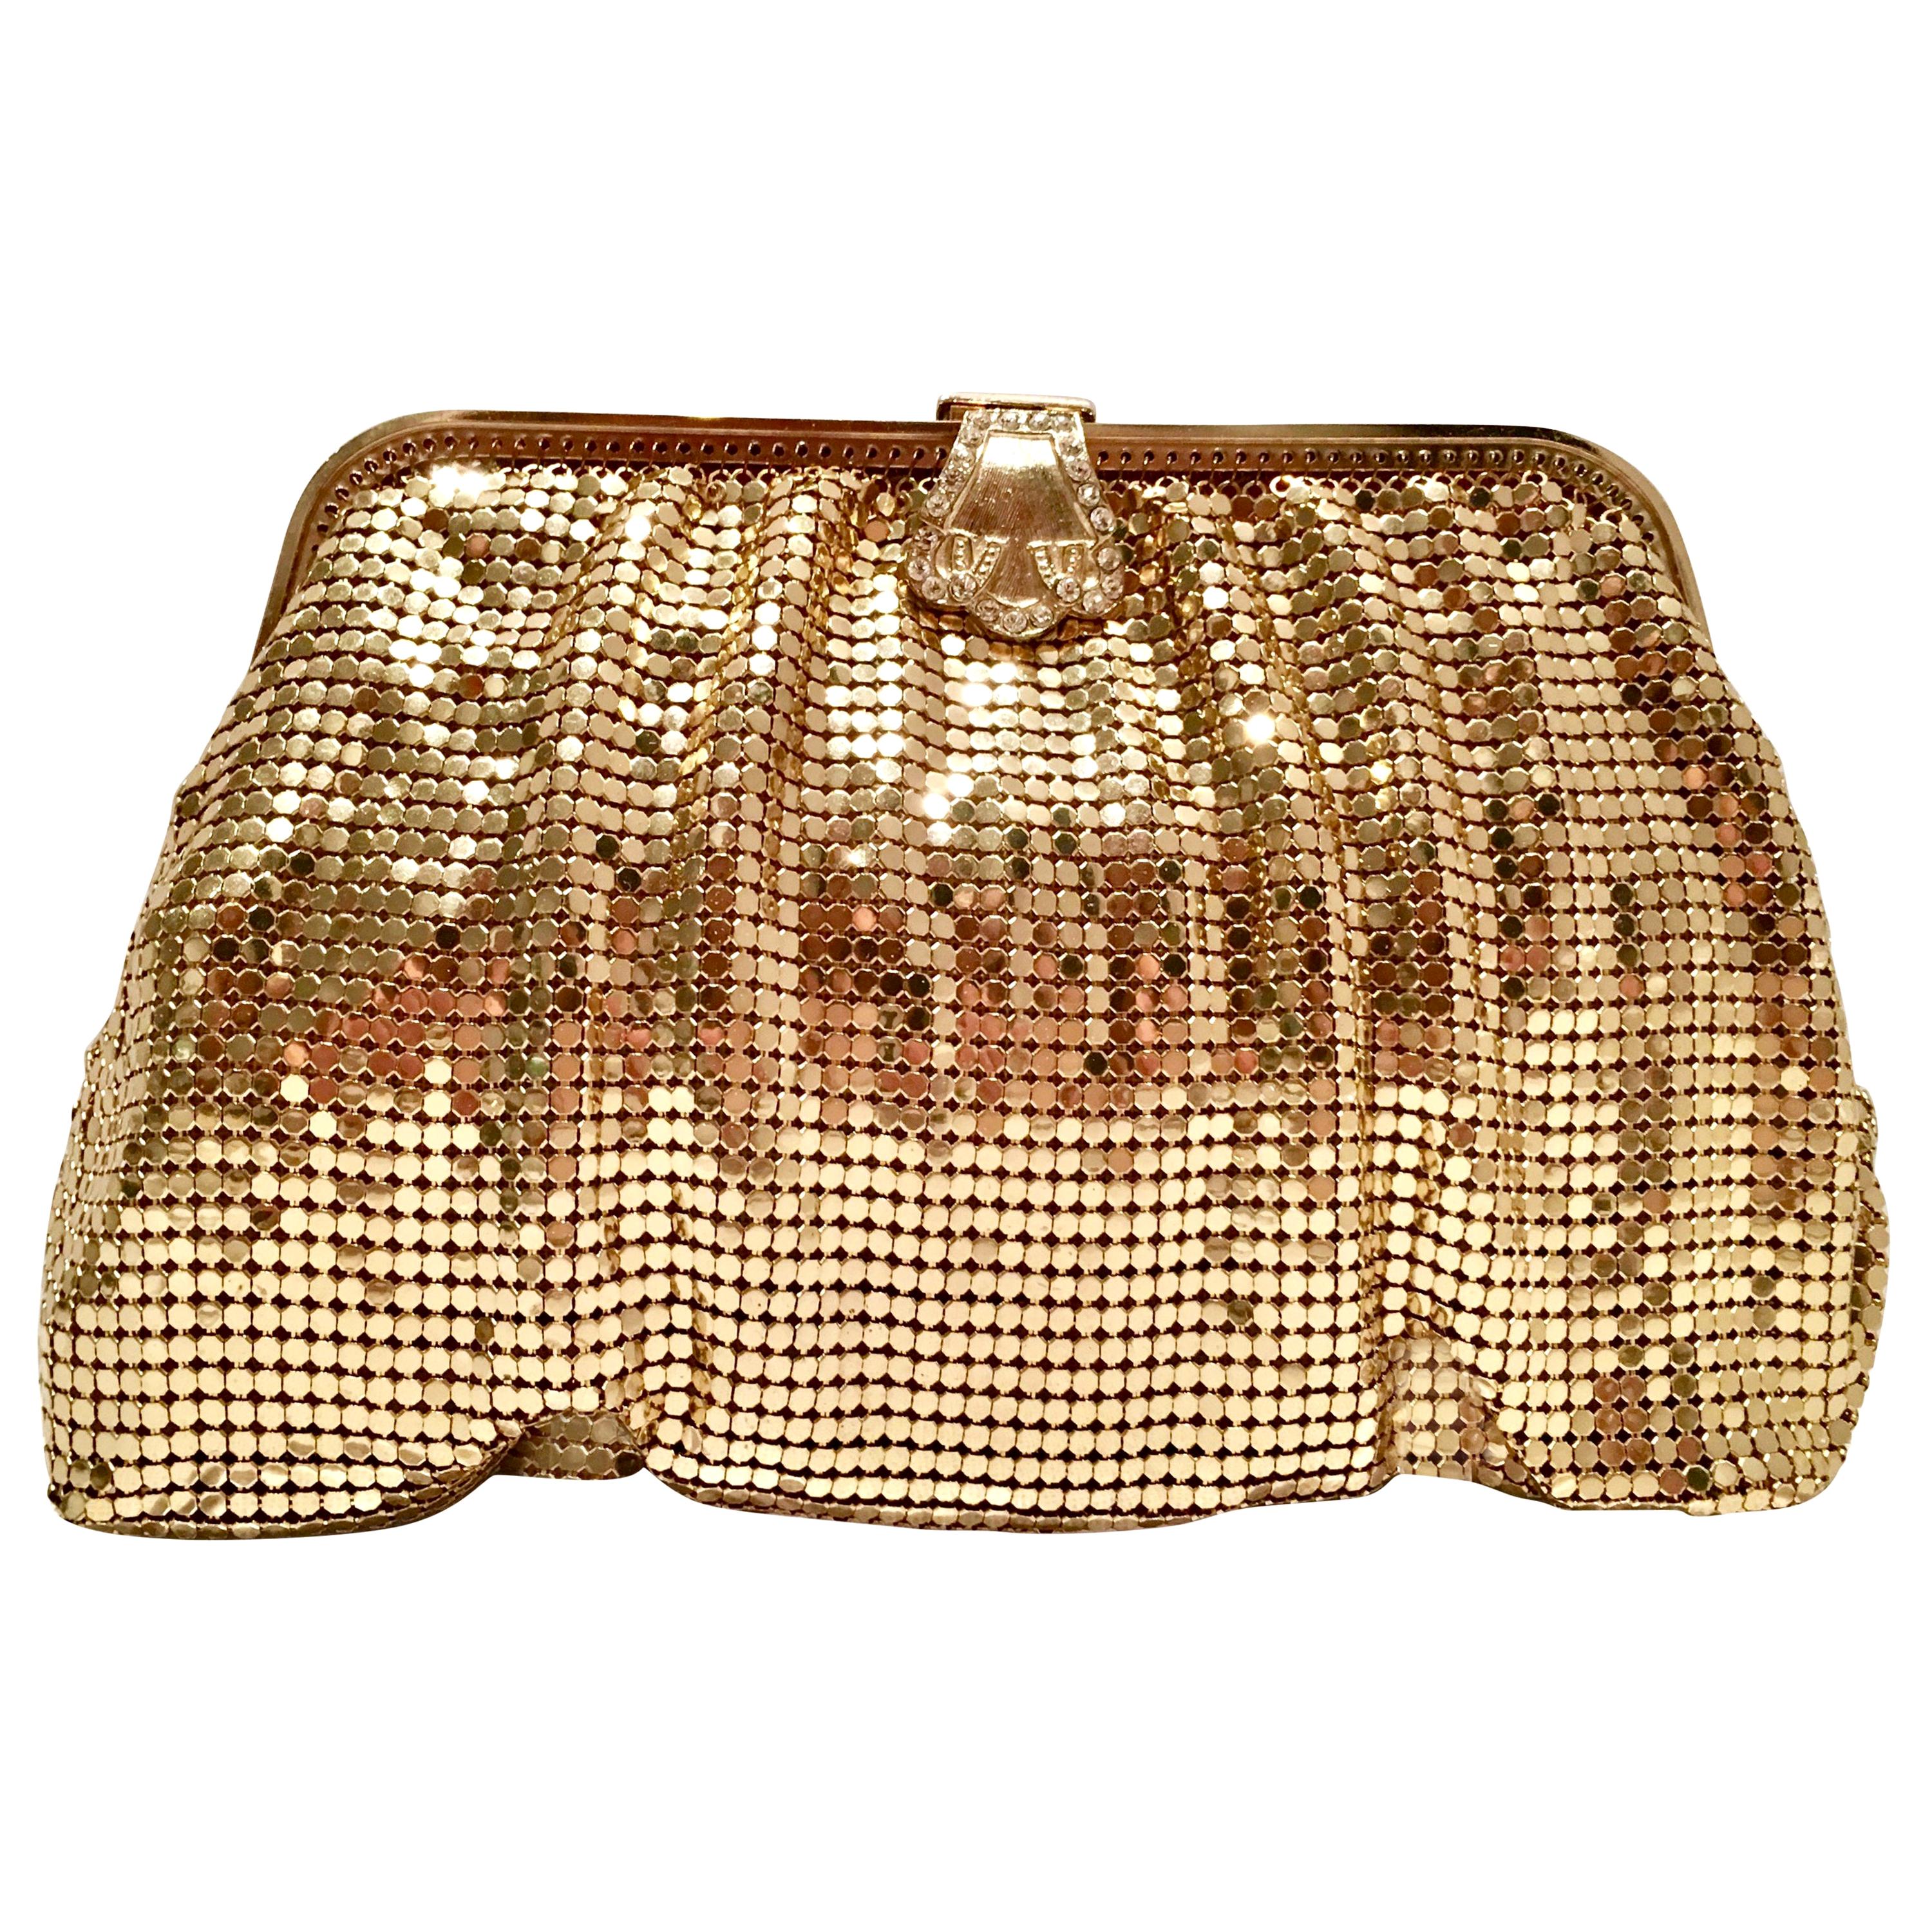 20th Century Gold Metal Mesh & Swarovksi Crystal Evening Bag By, Whiting & Davis